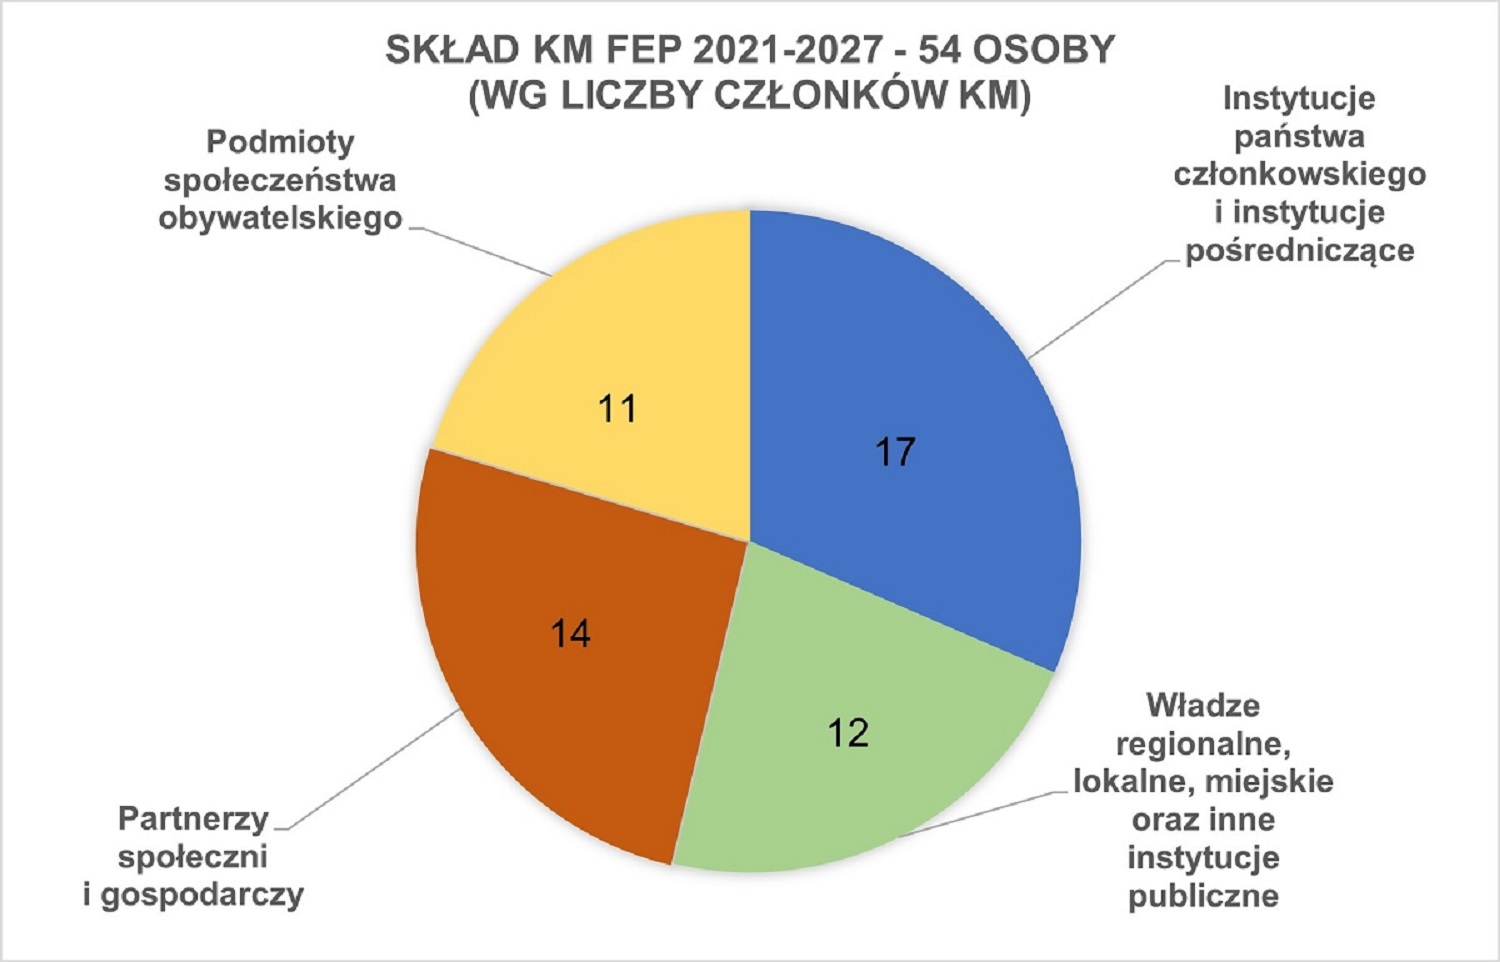 Skład KM FEP 2021-2027 w podziale na instytucje państwa członkowskiego i instytucje pośredniczące oraz poszczególne kategorie partnerów